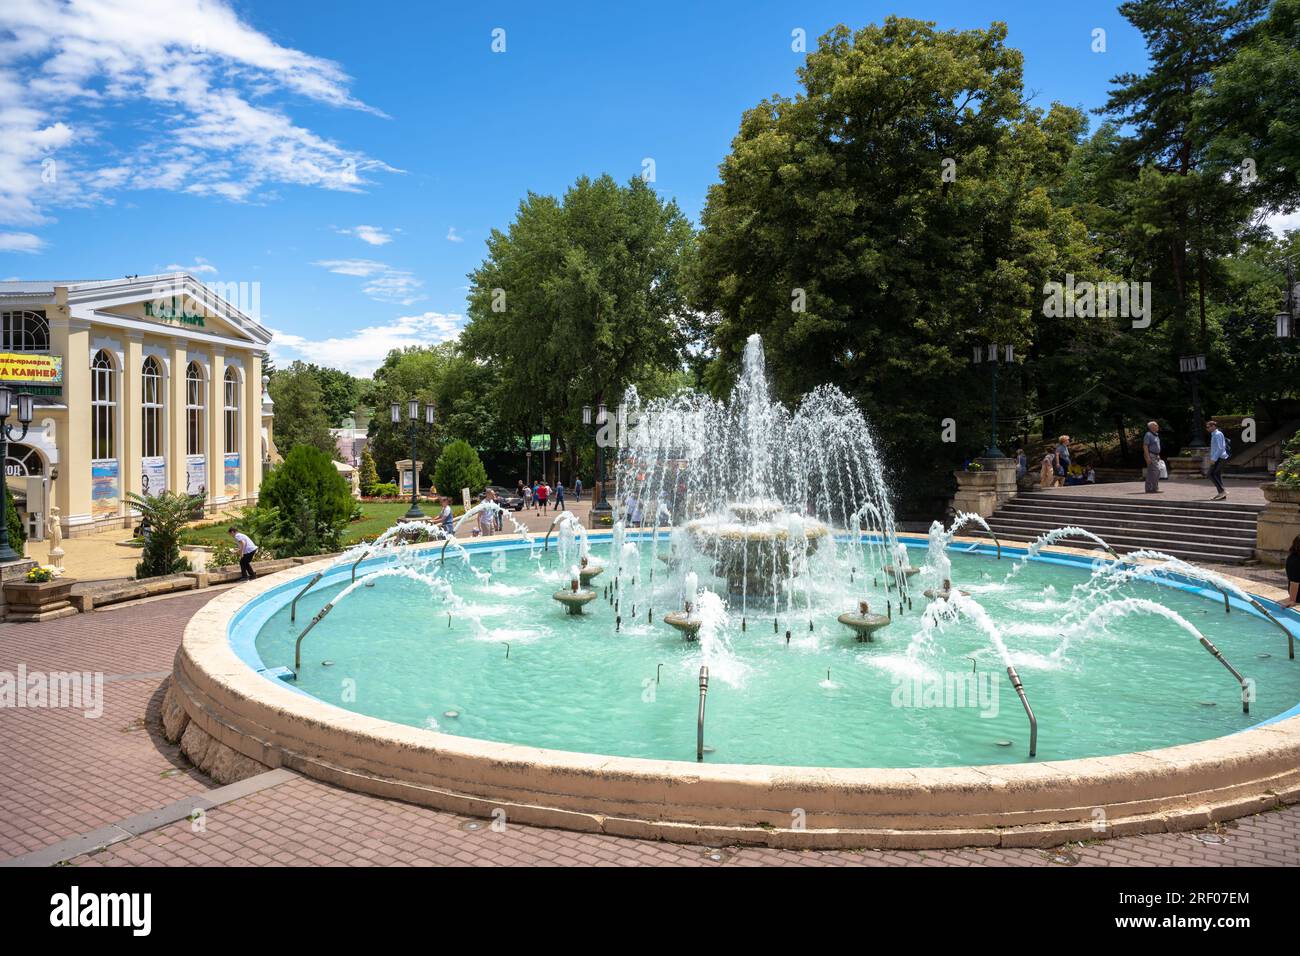 Belle fontaine à Yessentuki, ville thermale dans la région des eaux minérales caucasiennes, russe Stavropol Krai, Russie. Travel, des Banque D'Images